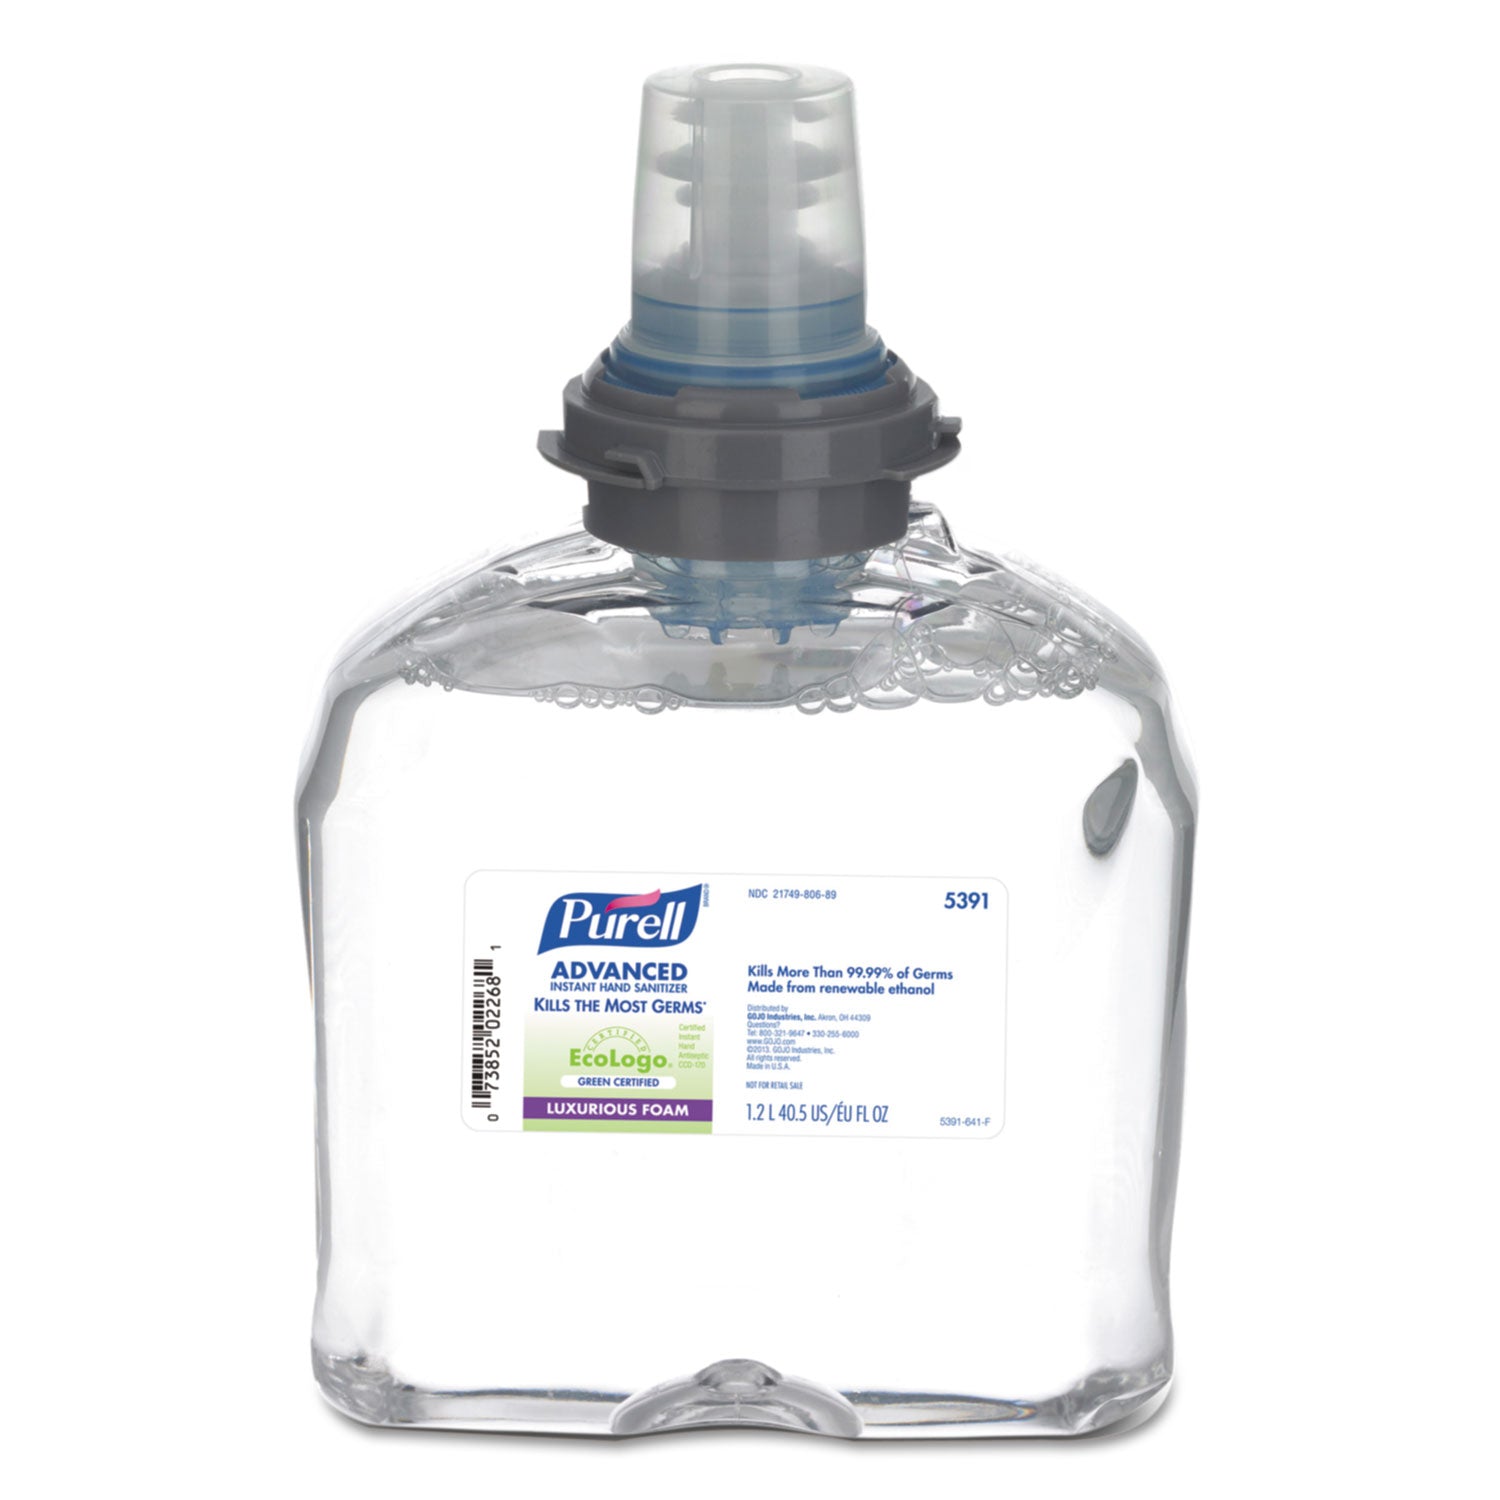 advanced-hand-sanitizer-green-certified-tfx-refill-foam-1200-ml-fragrance-free_goj539102ea - 1